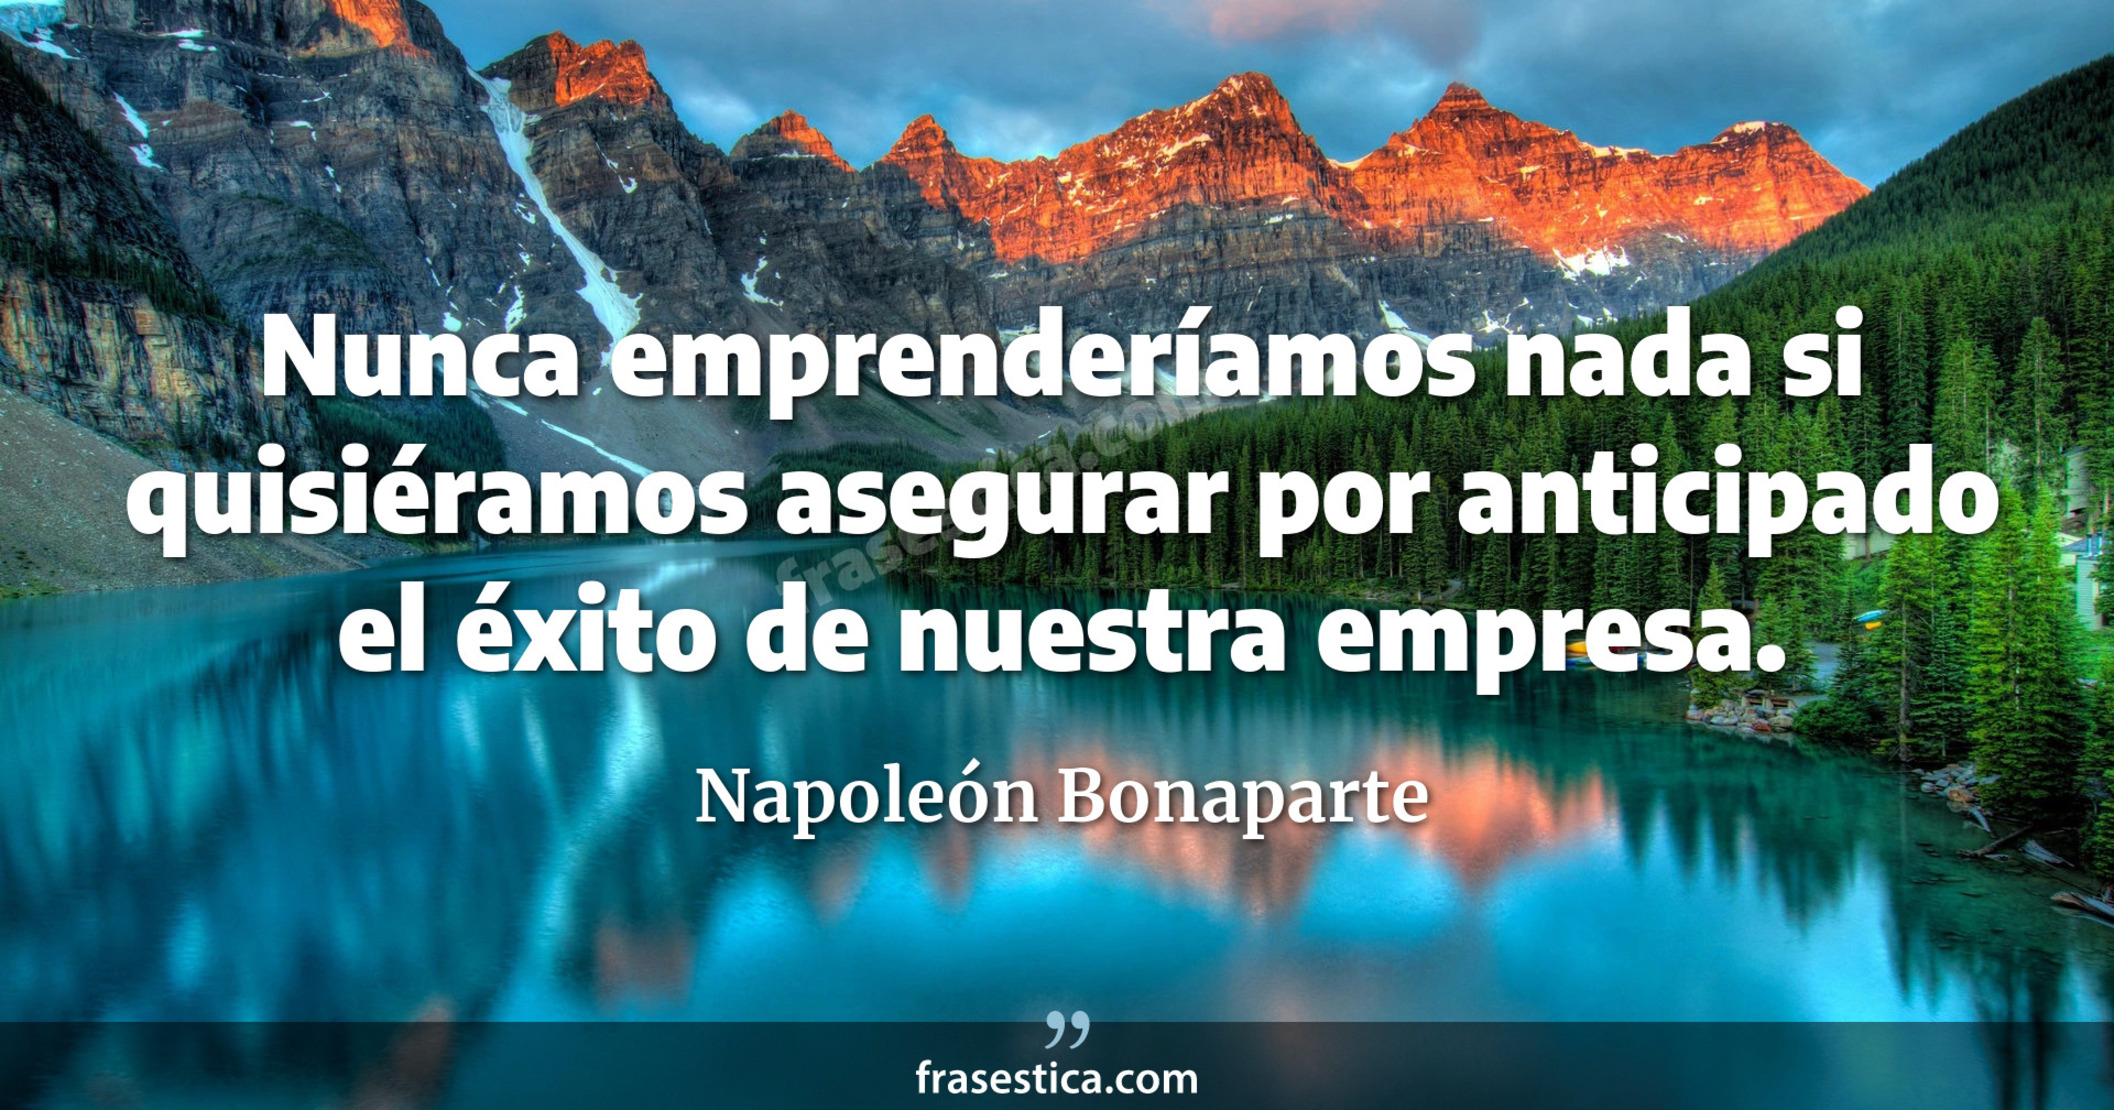 Nunca emprenderíamos nada si quisiéramos asegurar por anticipado el éxito de nuestra empresa. - Napoleón Bonaparte